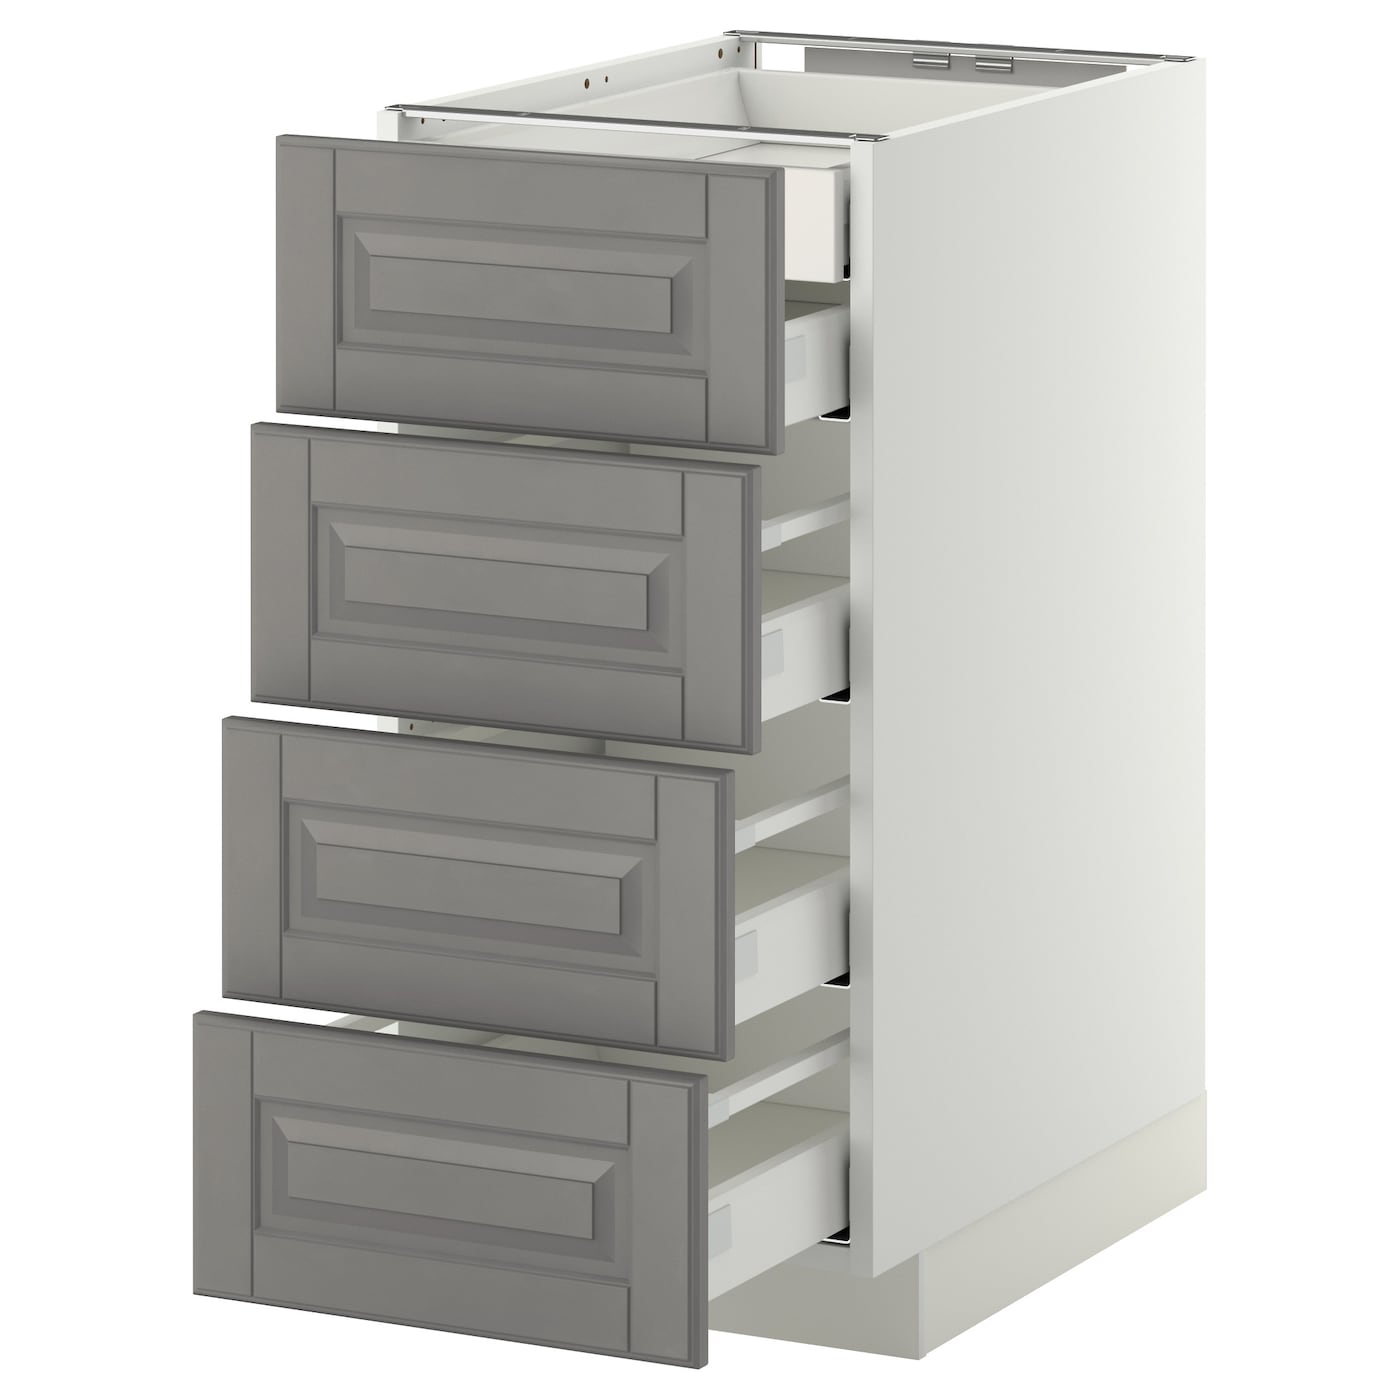 Напольный кухонный шкаф  - IKEA METOD MAXIMERA, 88x61,9x40см, белый/серый, МЕТОД МАКСИМЕРА ИКЕА